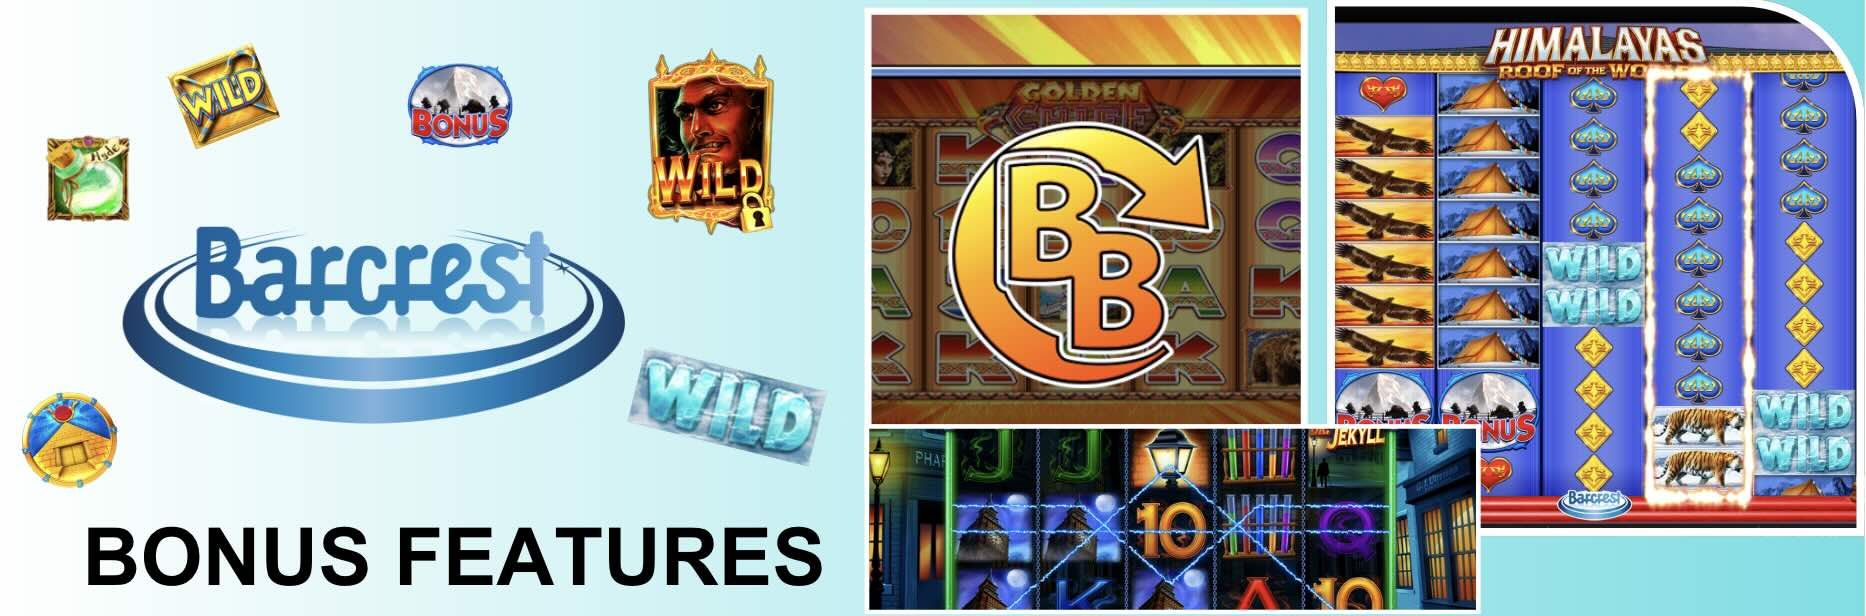 Image of Barcrest Game Bonus Features